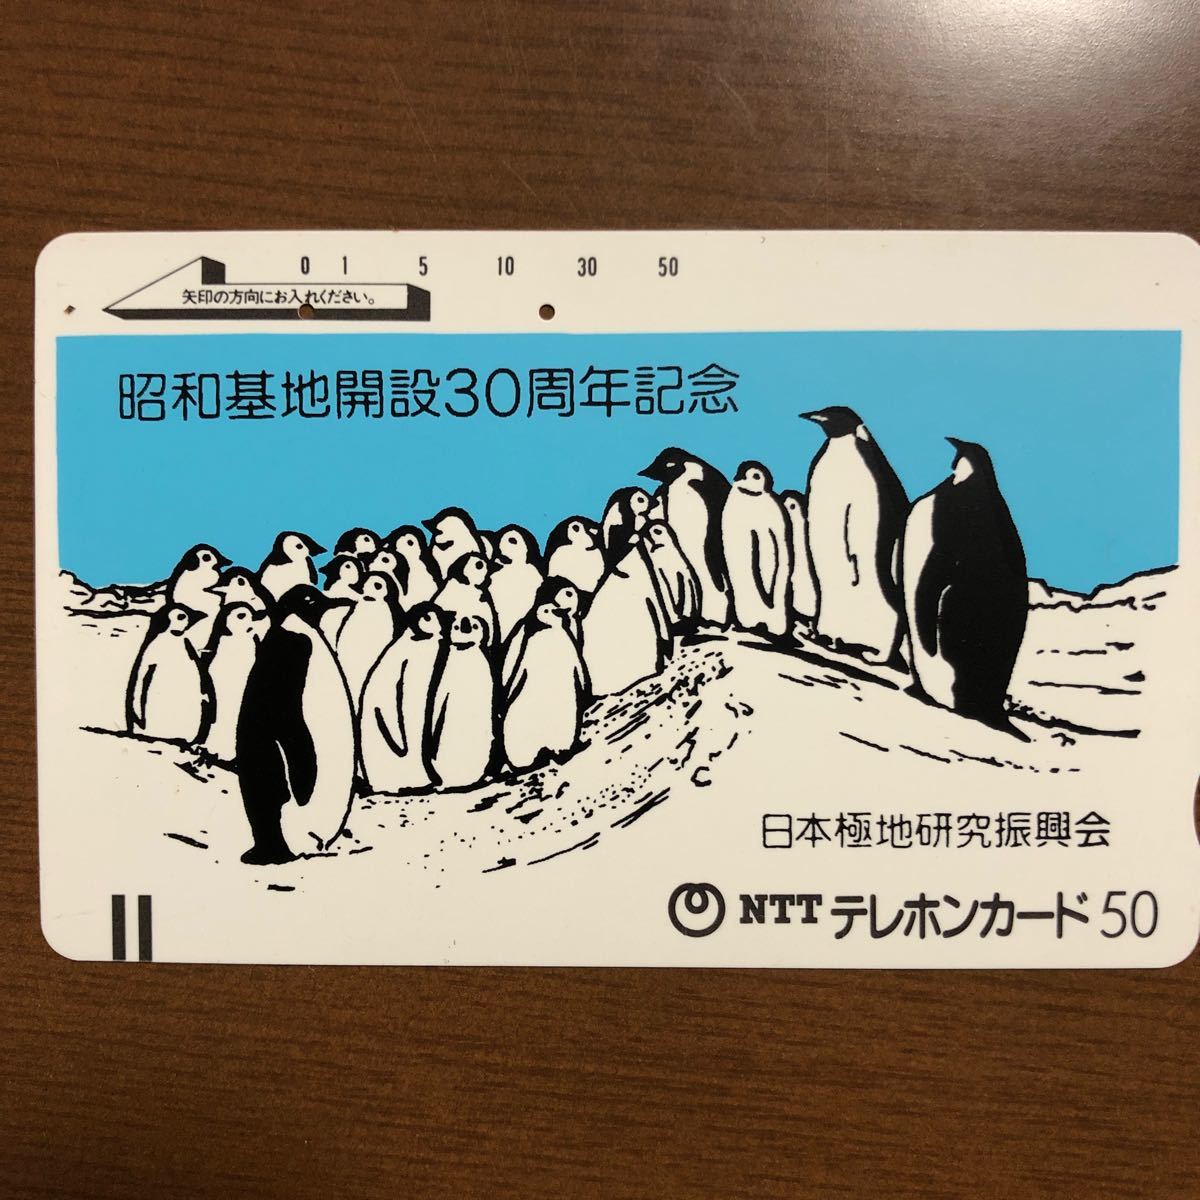 使用済みテレホンカード、記念カード